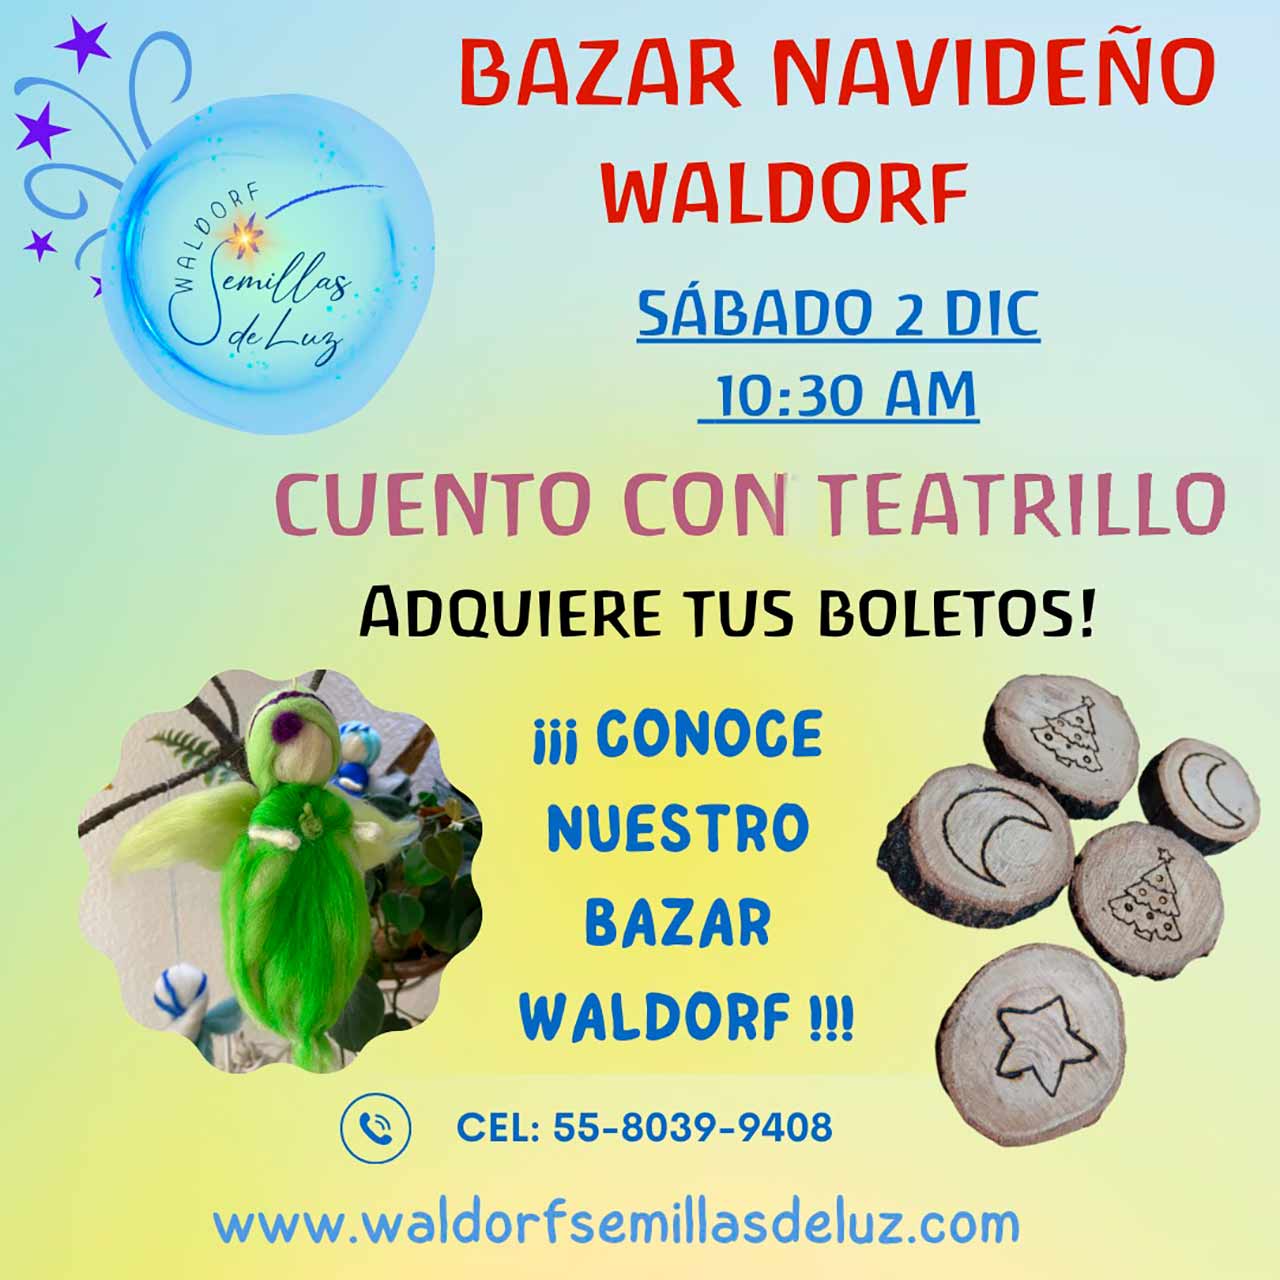 BAZAR-NAVIDEÑO-WALDORF-CUENTO-CON-TEATRILLO-01